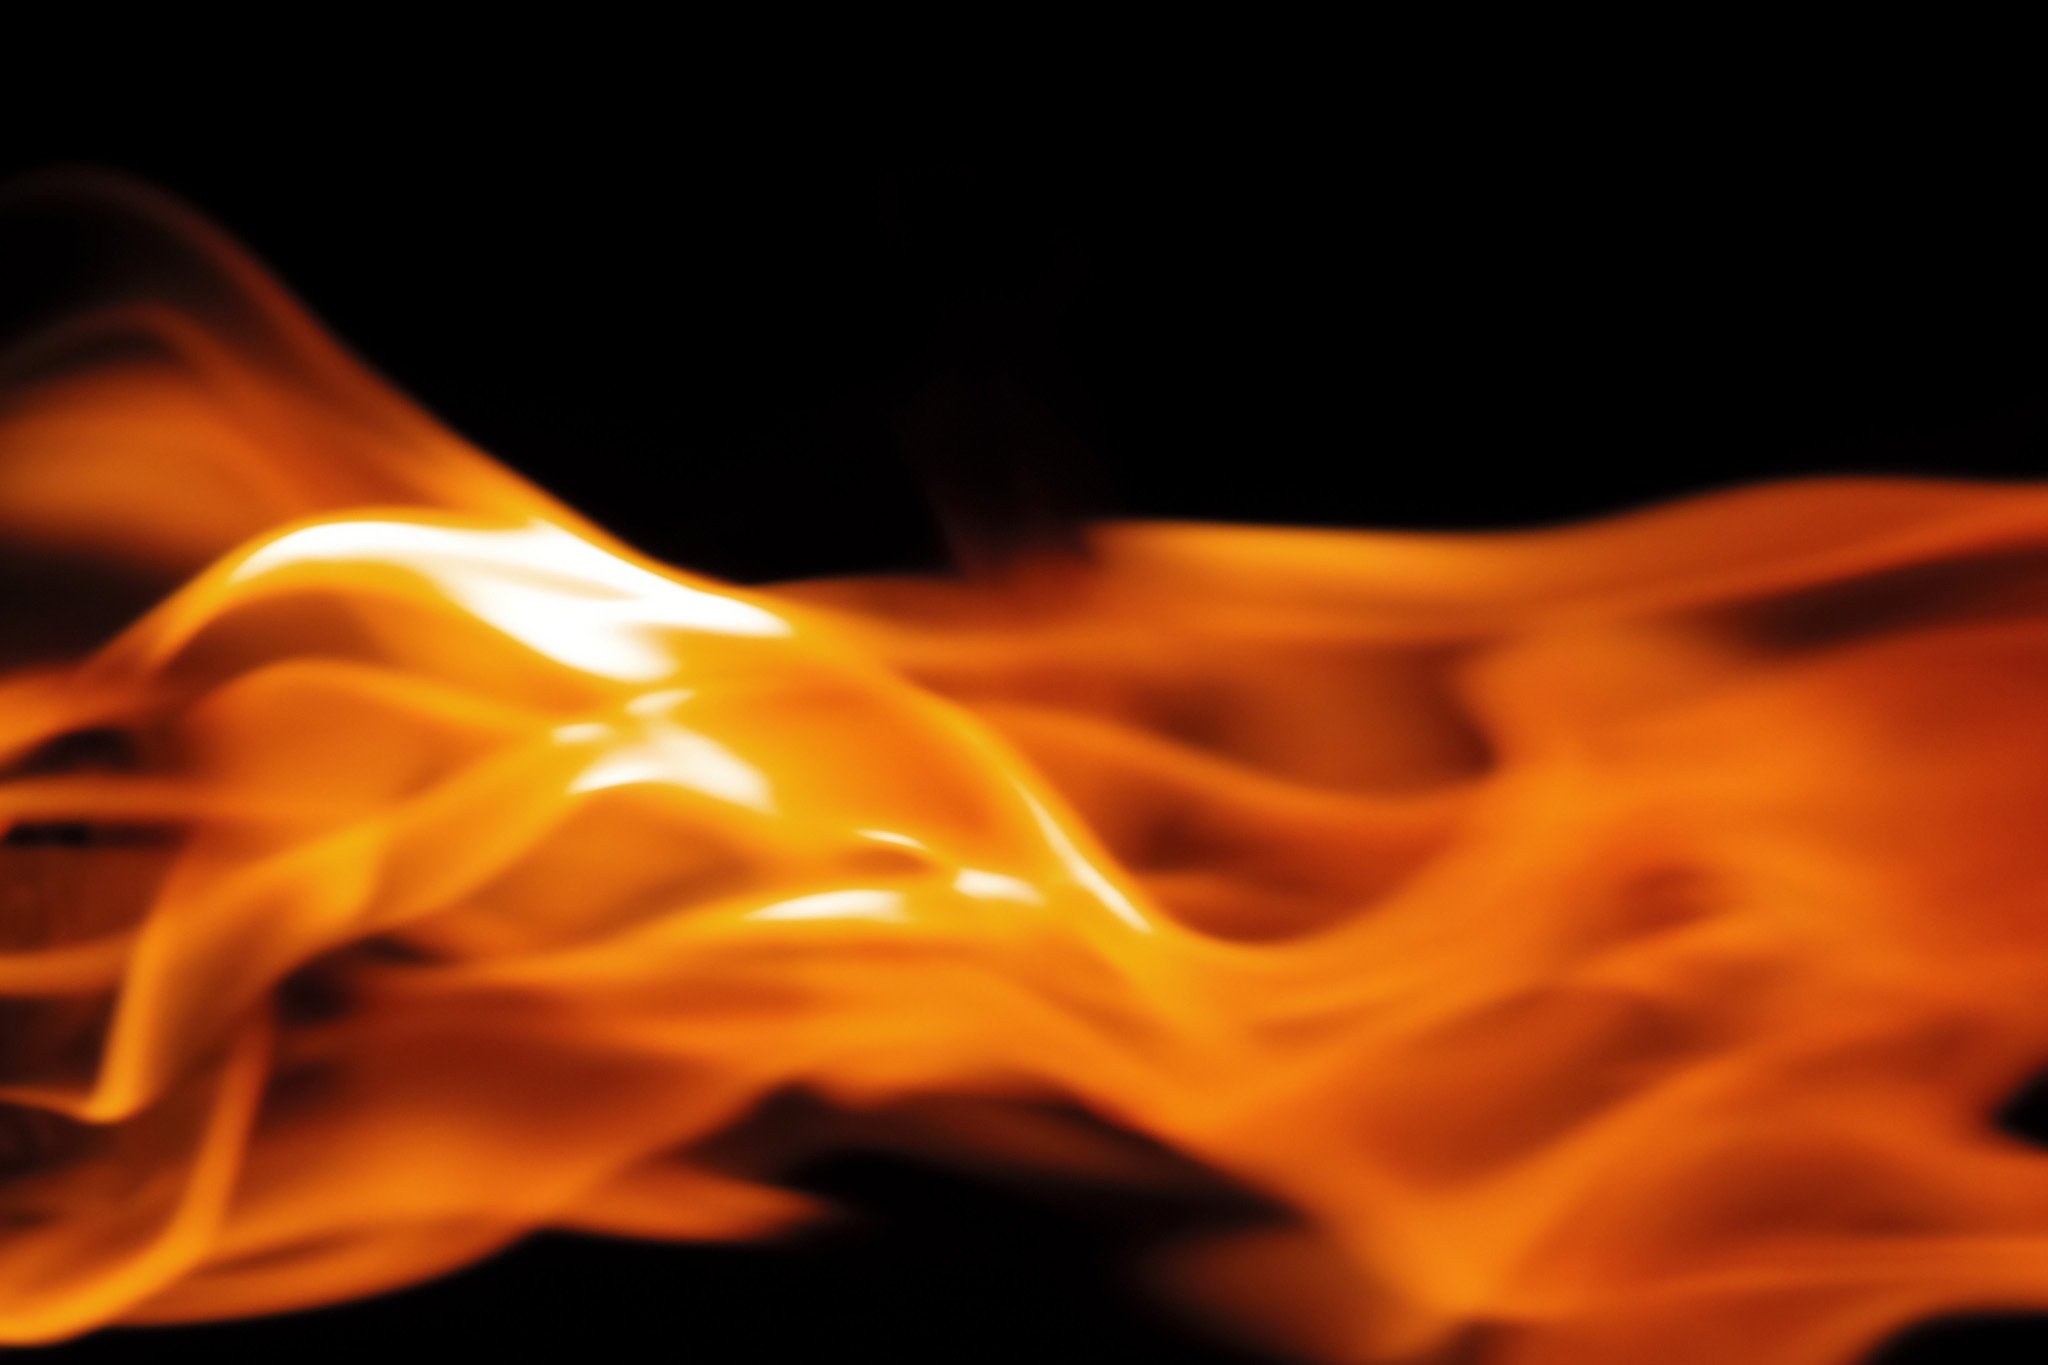 生物のように横に広がる火 のテクスチャ素材を無料ダウンロード 1 背景フリー素材 Beiz Images